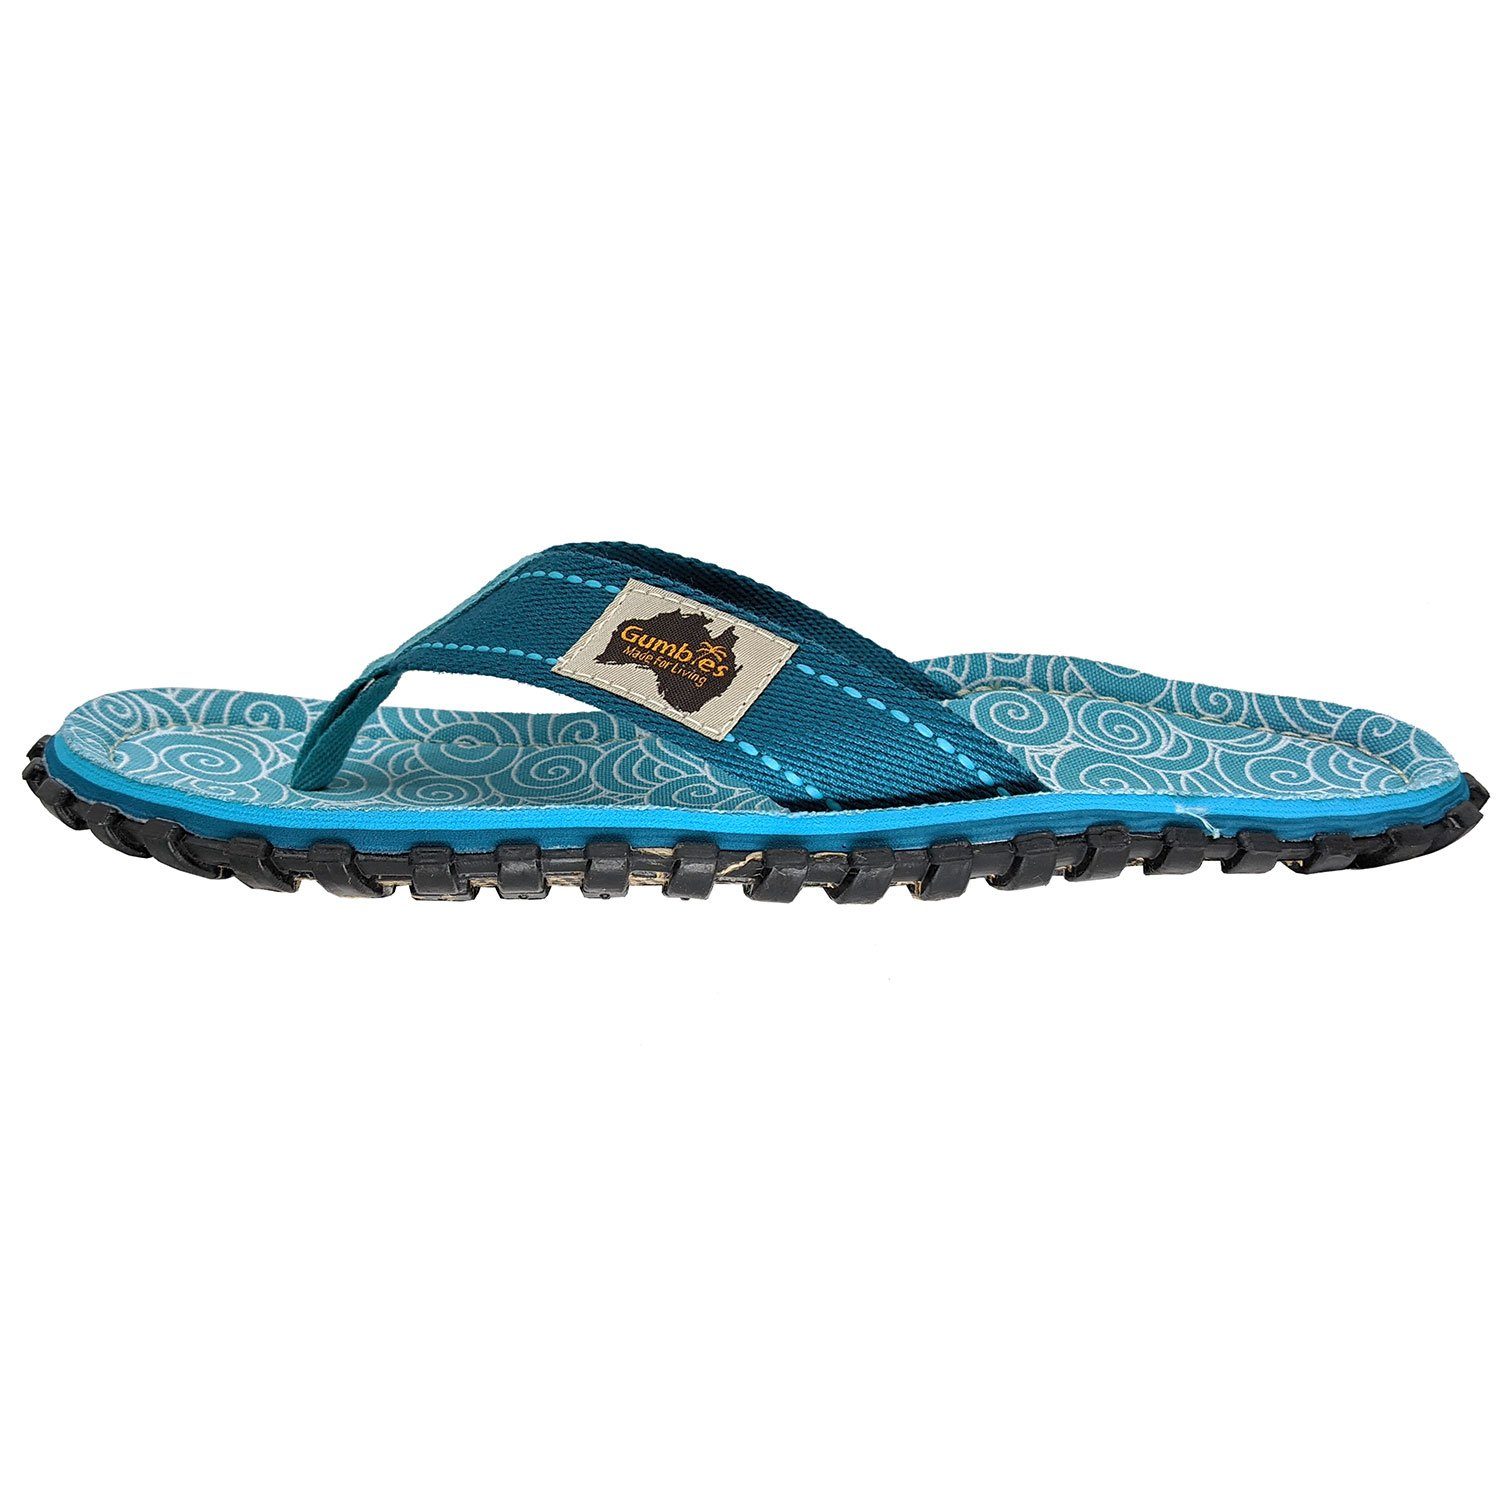 Schuhe  Gumbies Original in Turquoise Swirls T-Strap-Zehentrenner aus recycelten Materialien in farbenfrohen Designs